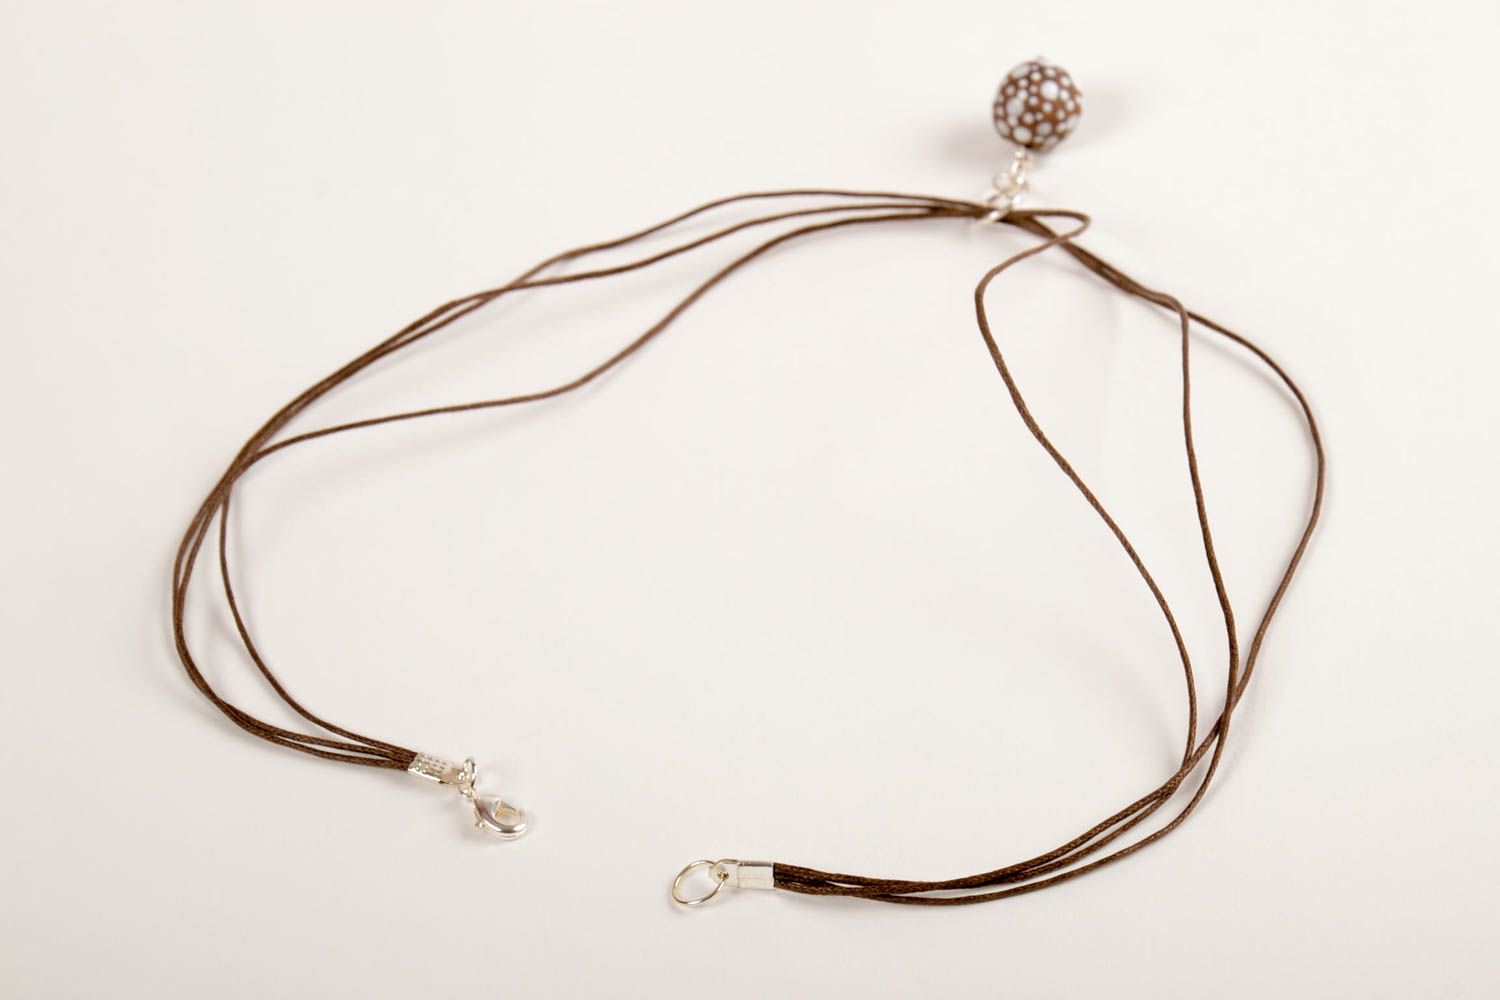 Stylish pendant on lace ceramic handmade pendant female accessory gift photo 3